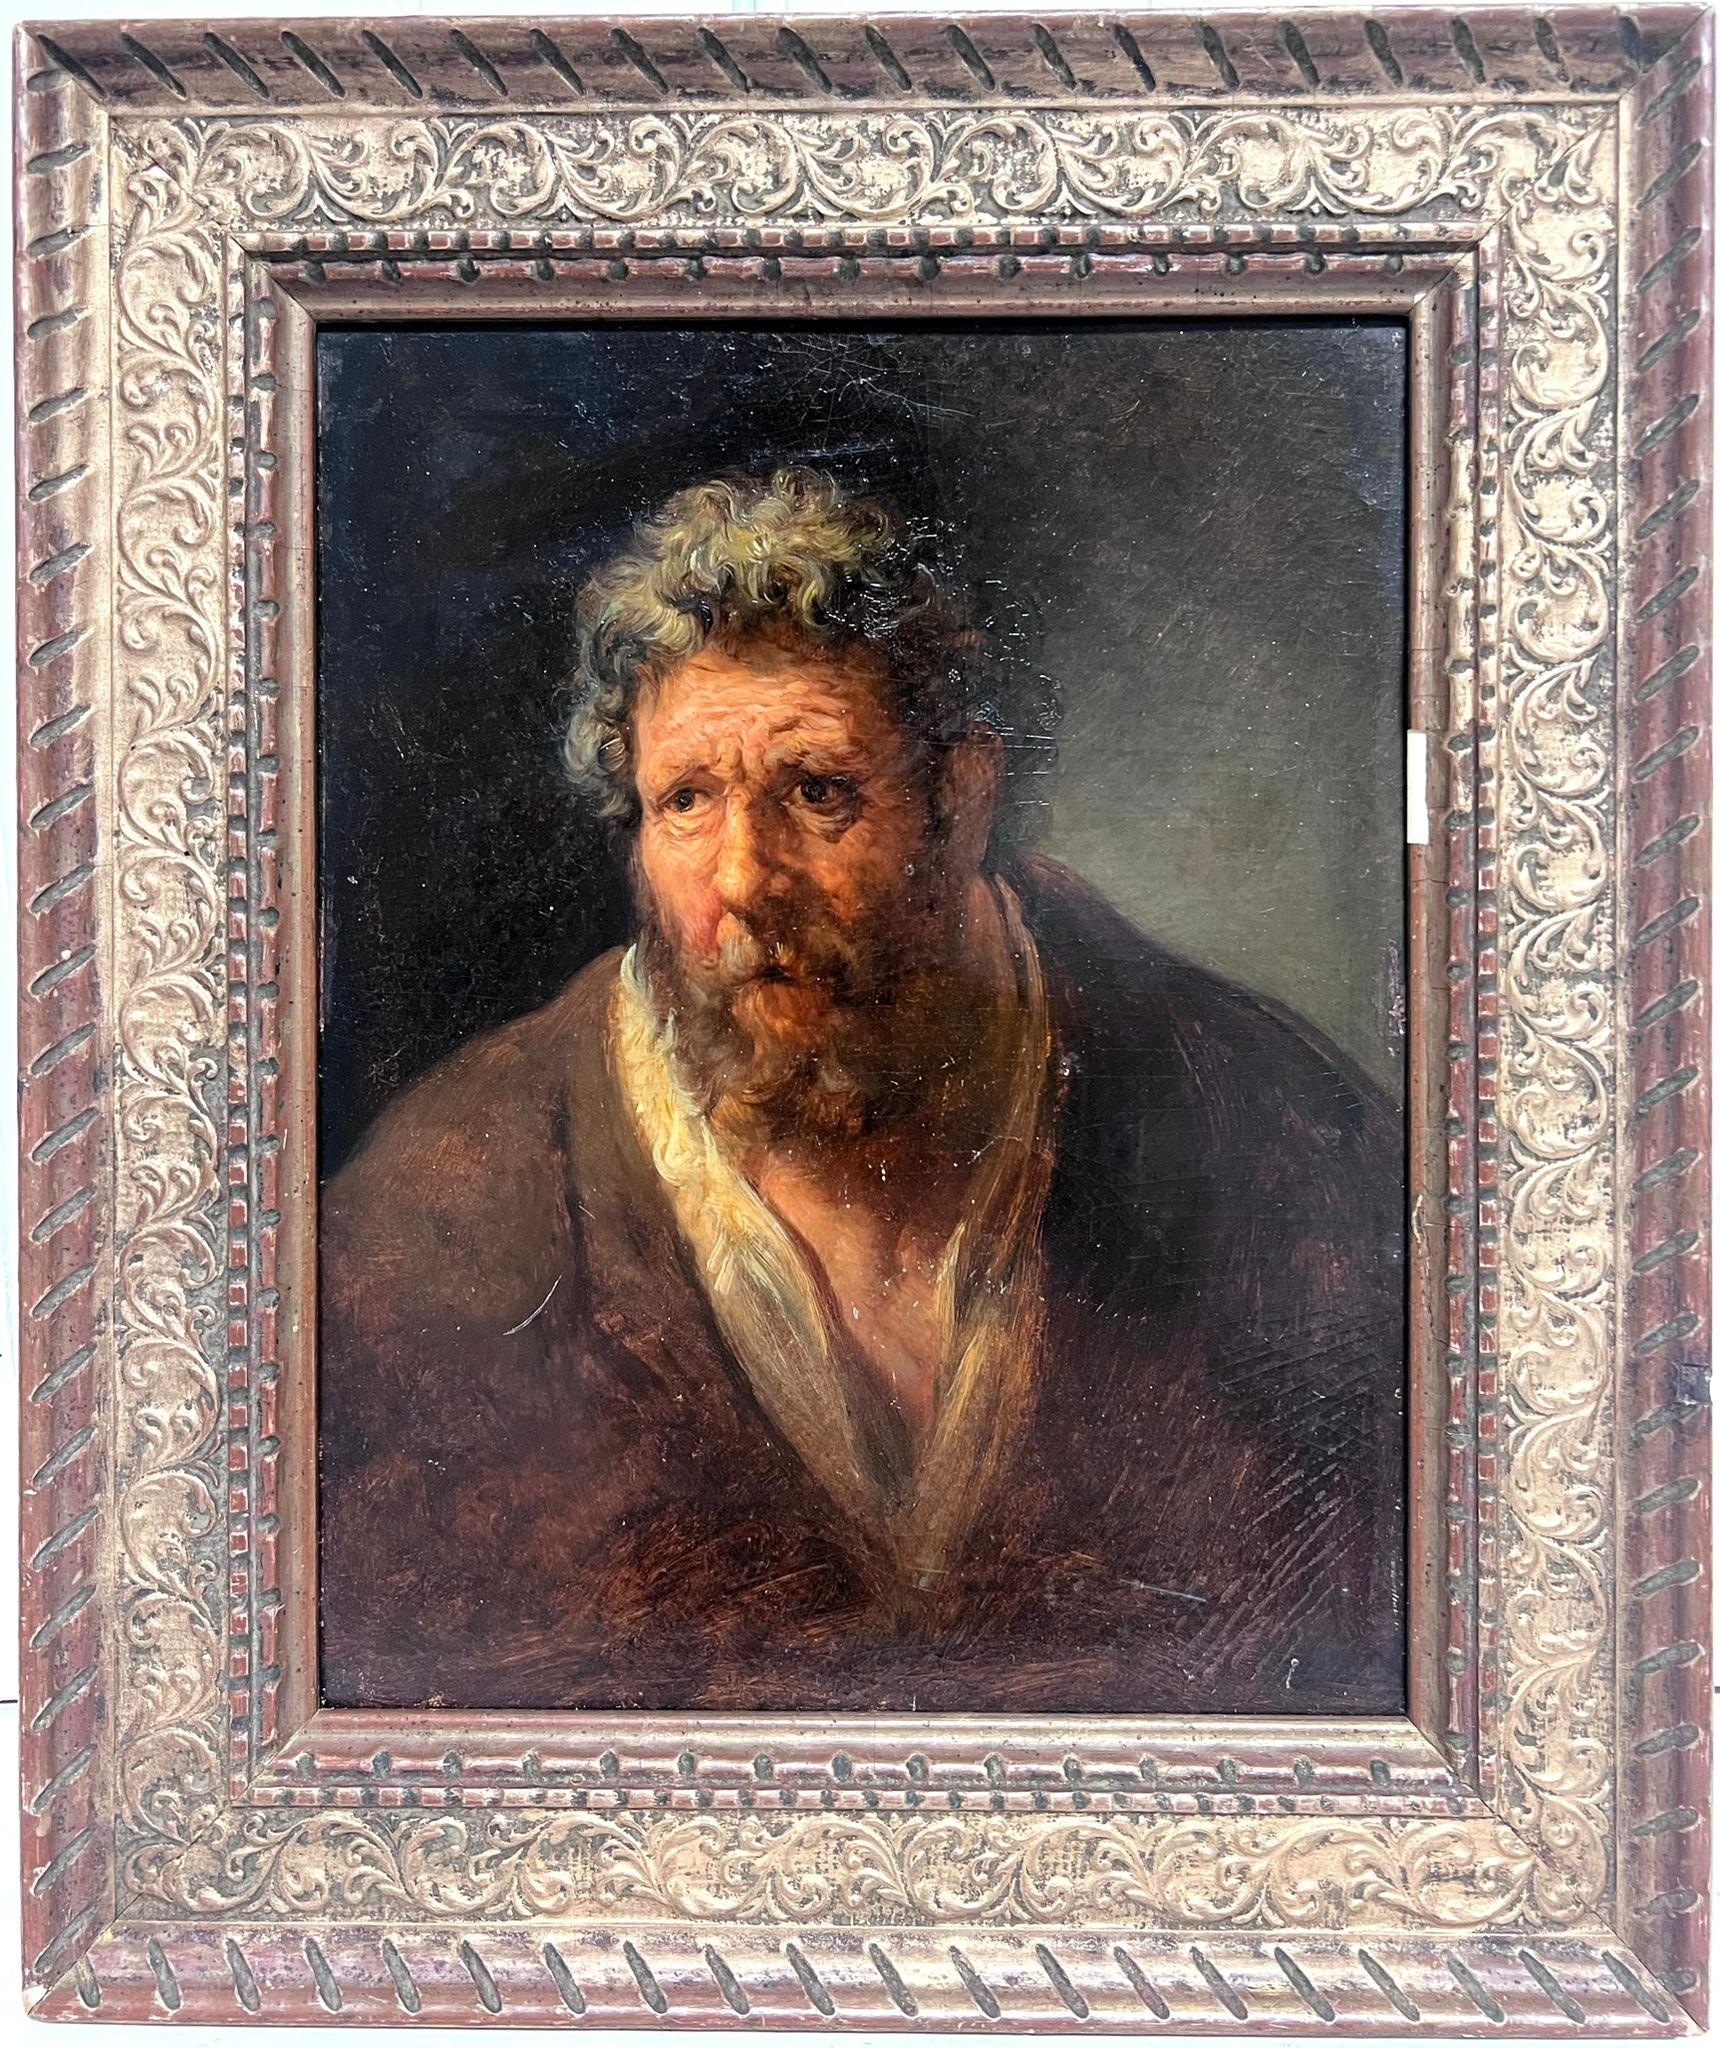 Frühes italienisches Ölgemälde aus dem Jahr 1800 Porträt des bärtigen Mannes, des Apostels Peters